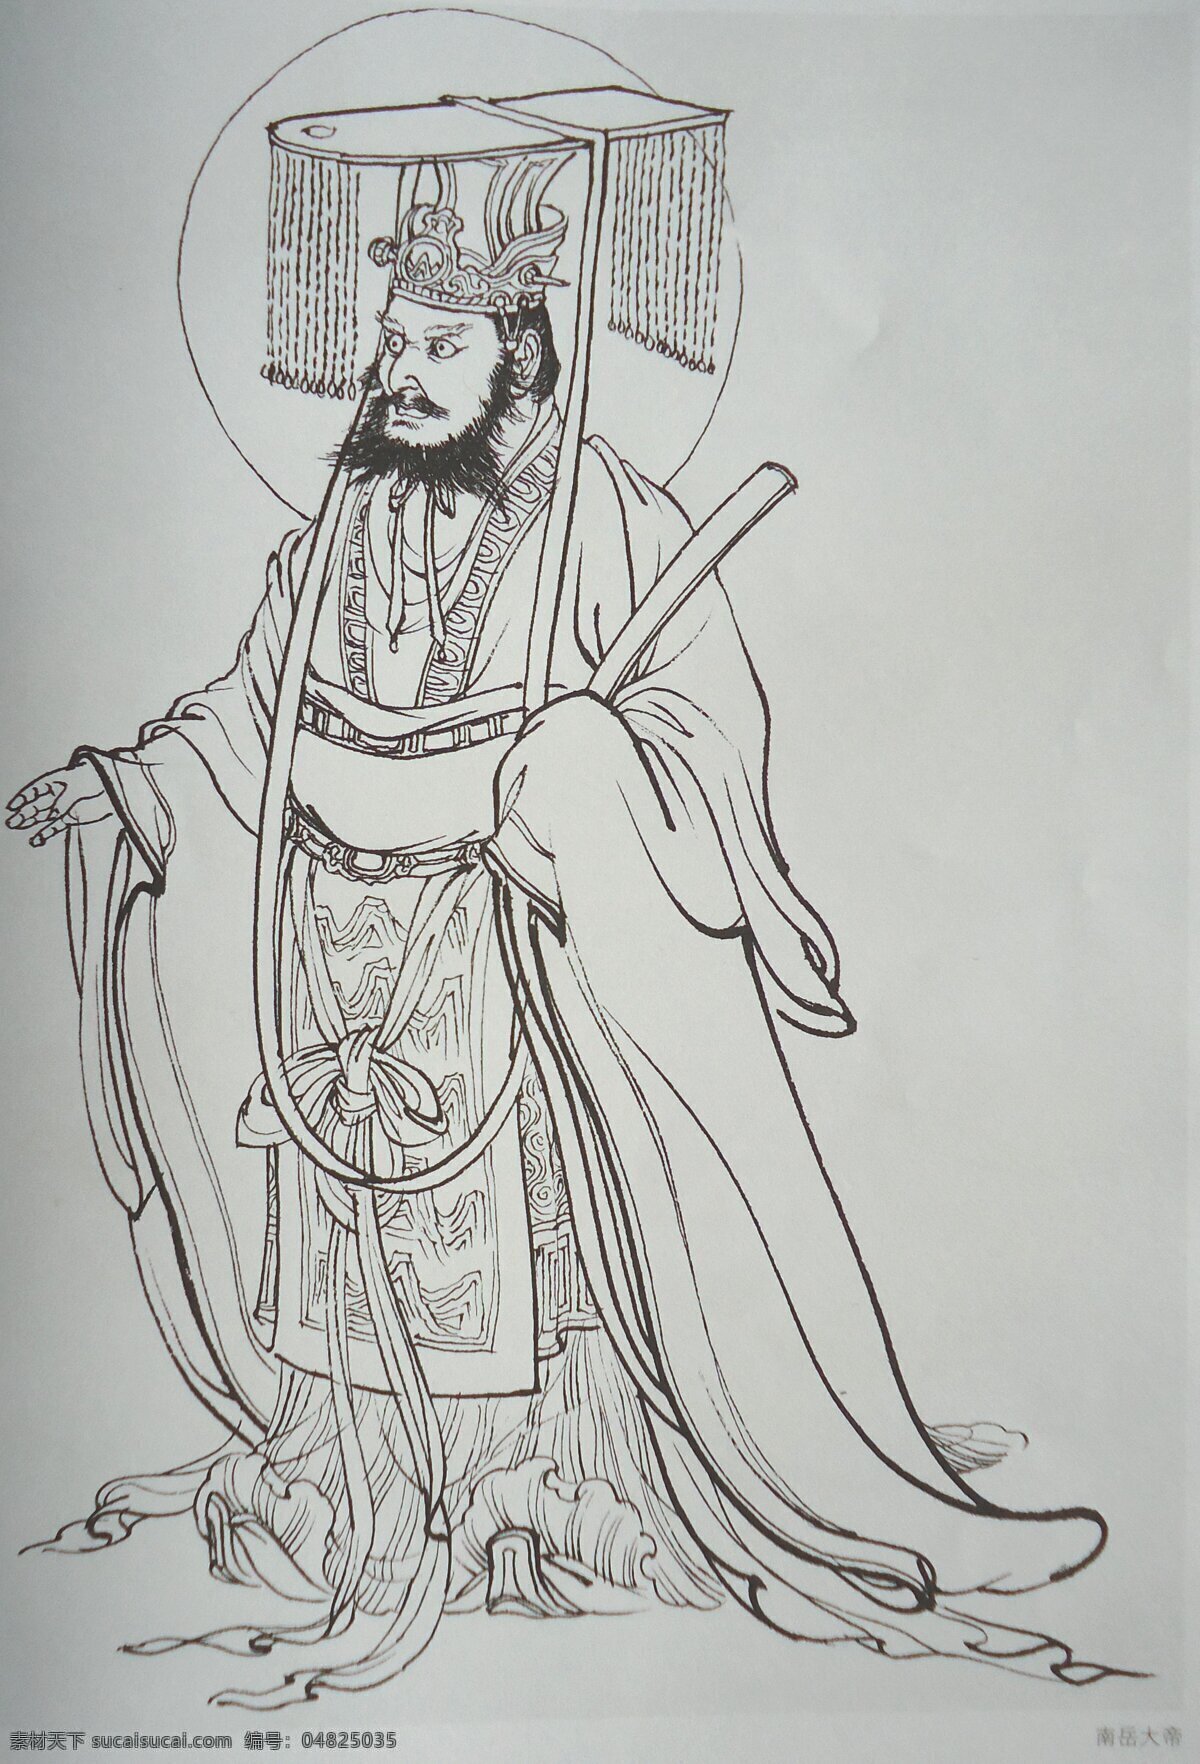 五岳大帝 南岳大帝 神话人物 工笔画 绘画 美术 白描 线描 李云中 传统人物画 绘画书法 文化艺术